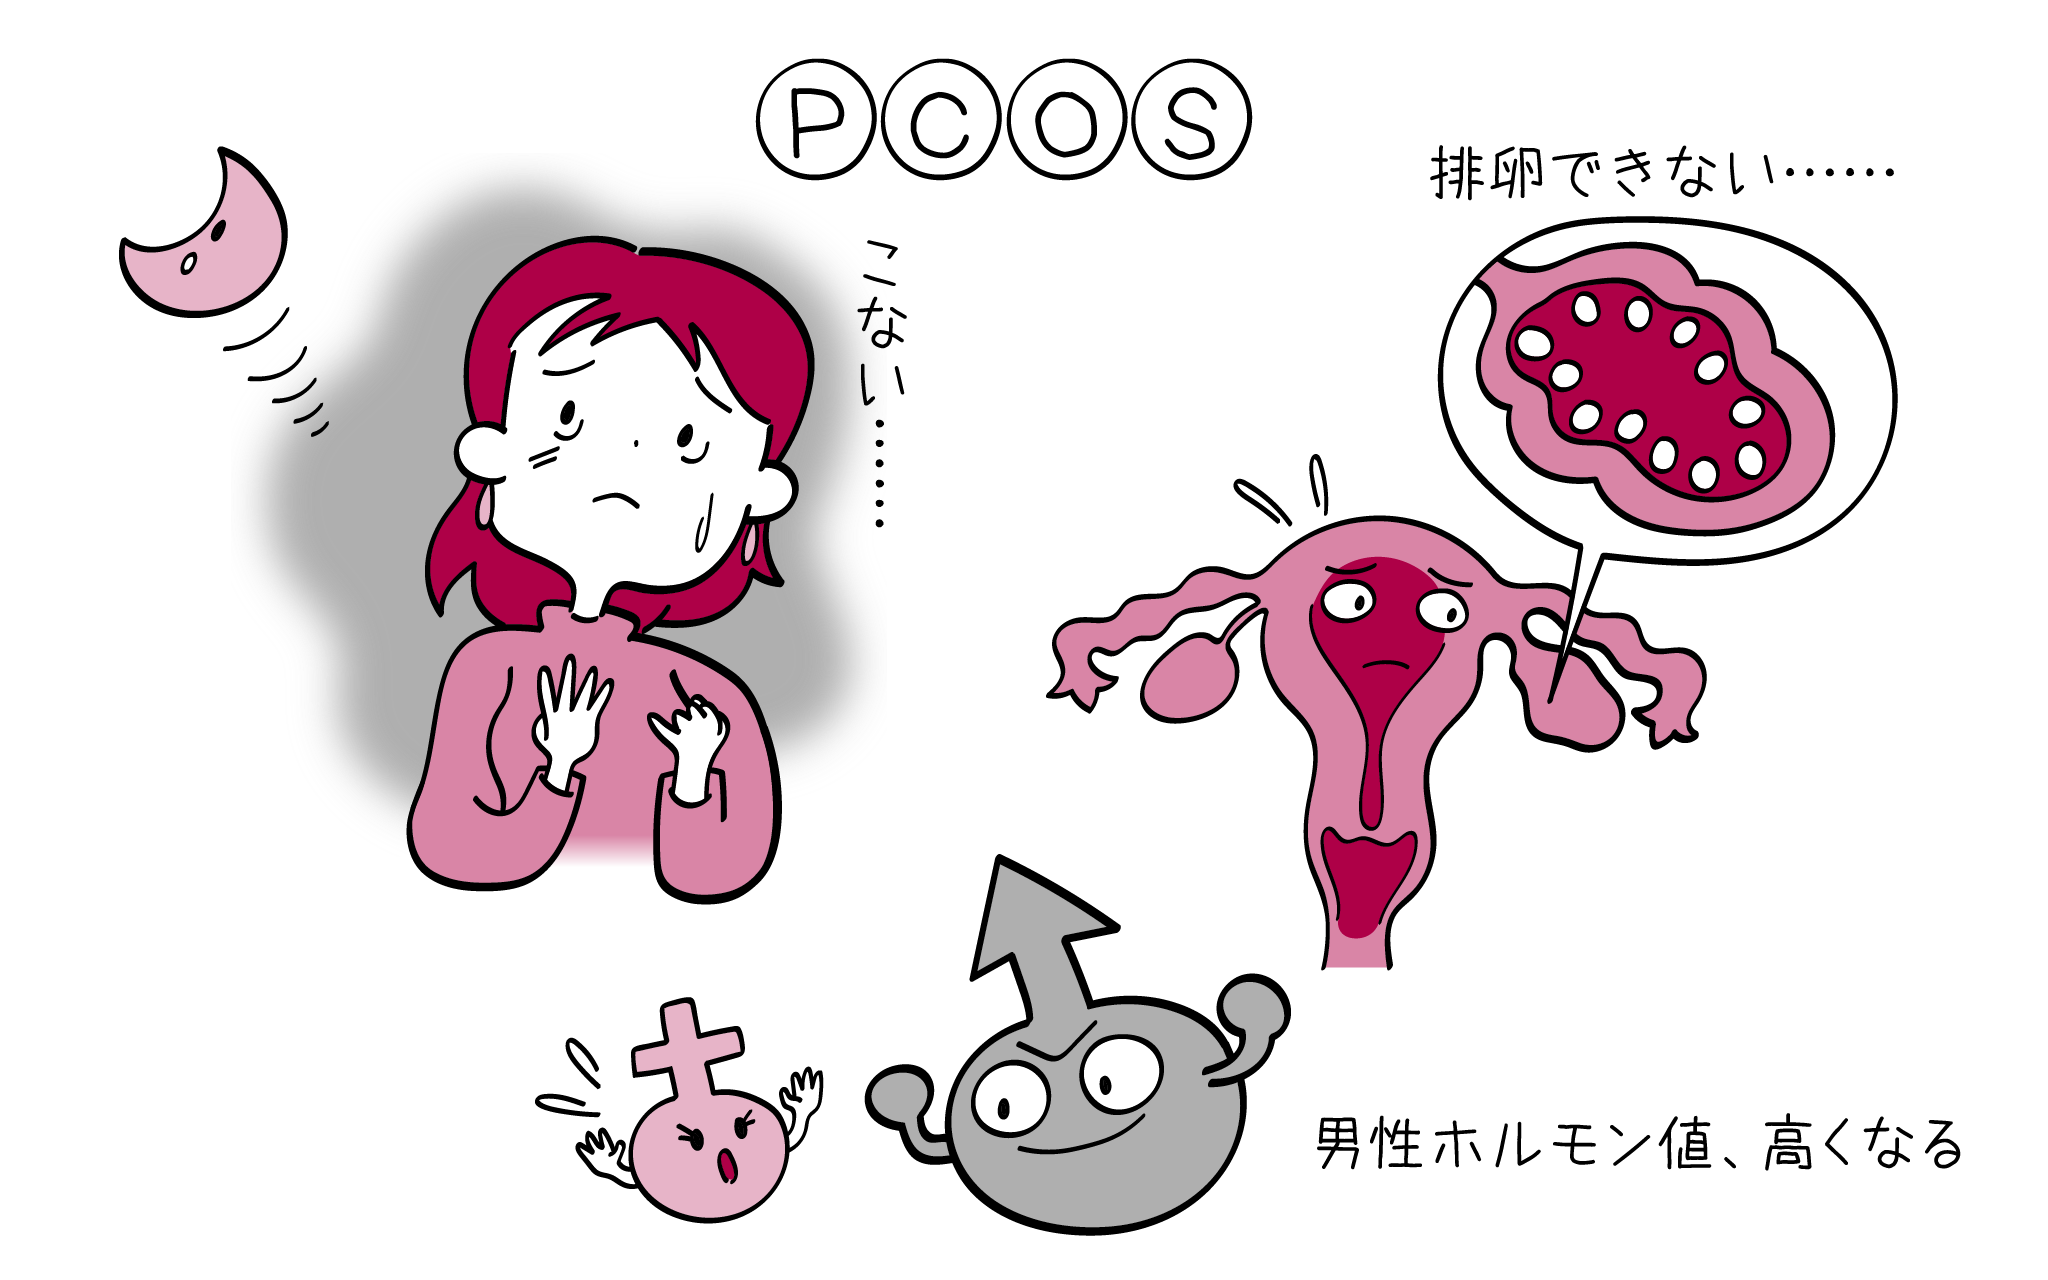 多嚢胞性卵巣症候群の病気の症状・診断・治療を解説するイラスト